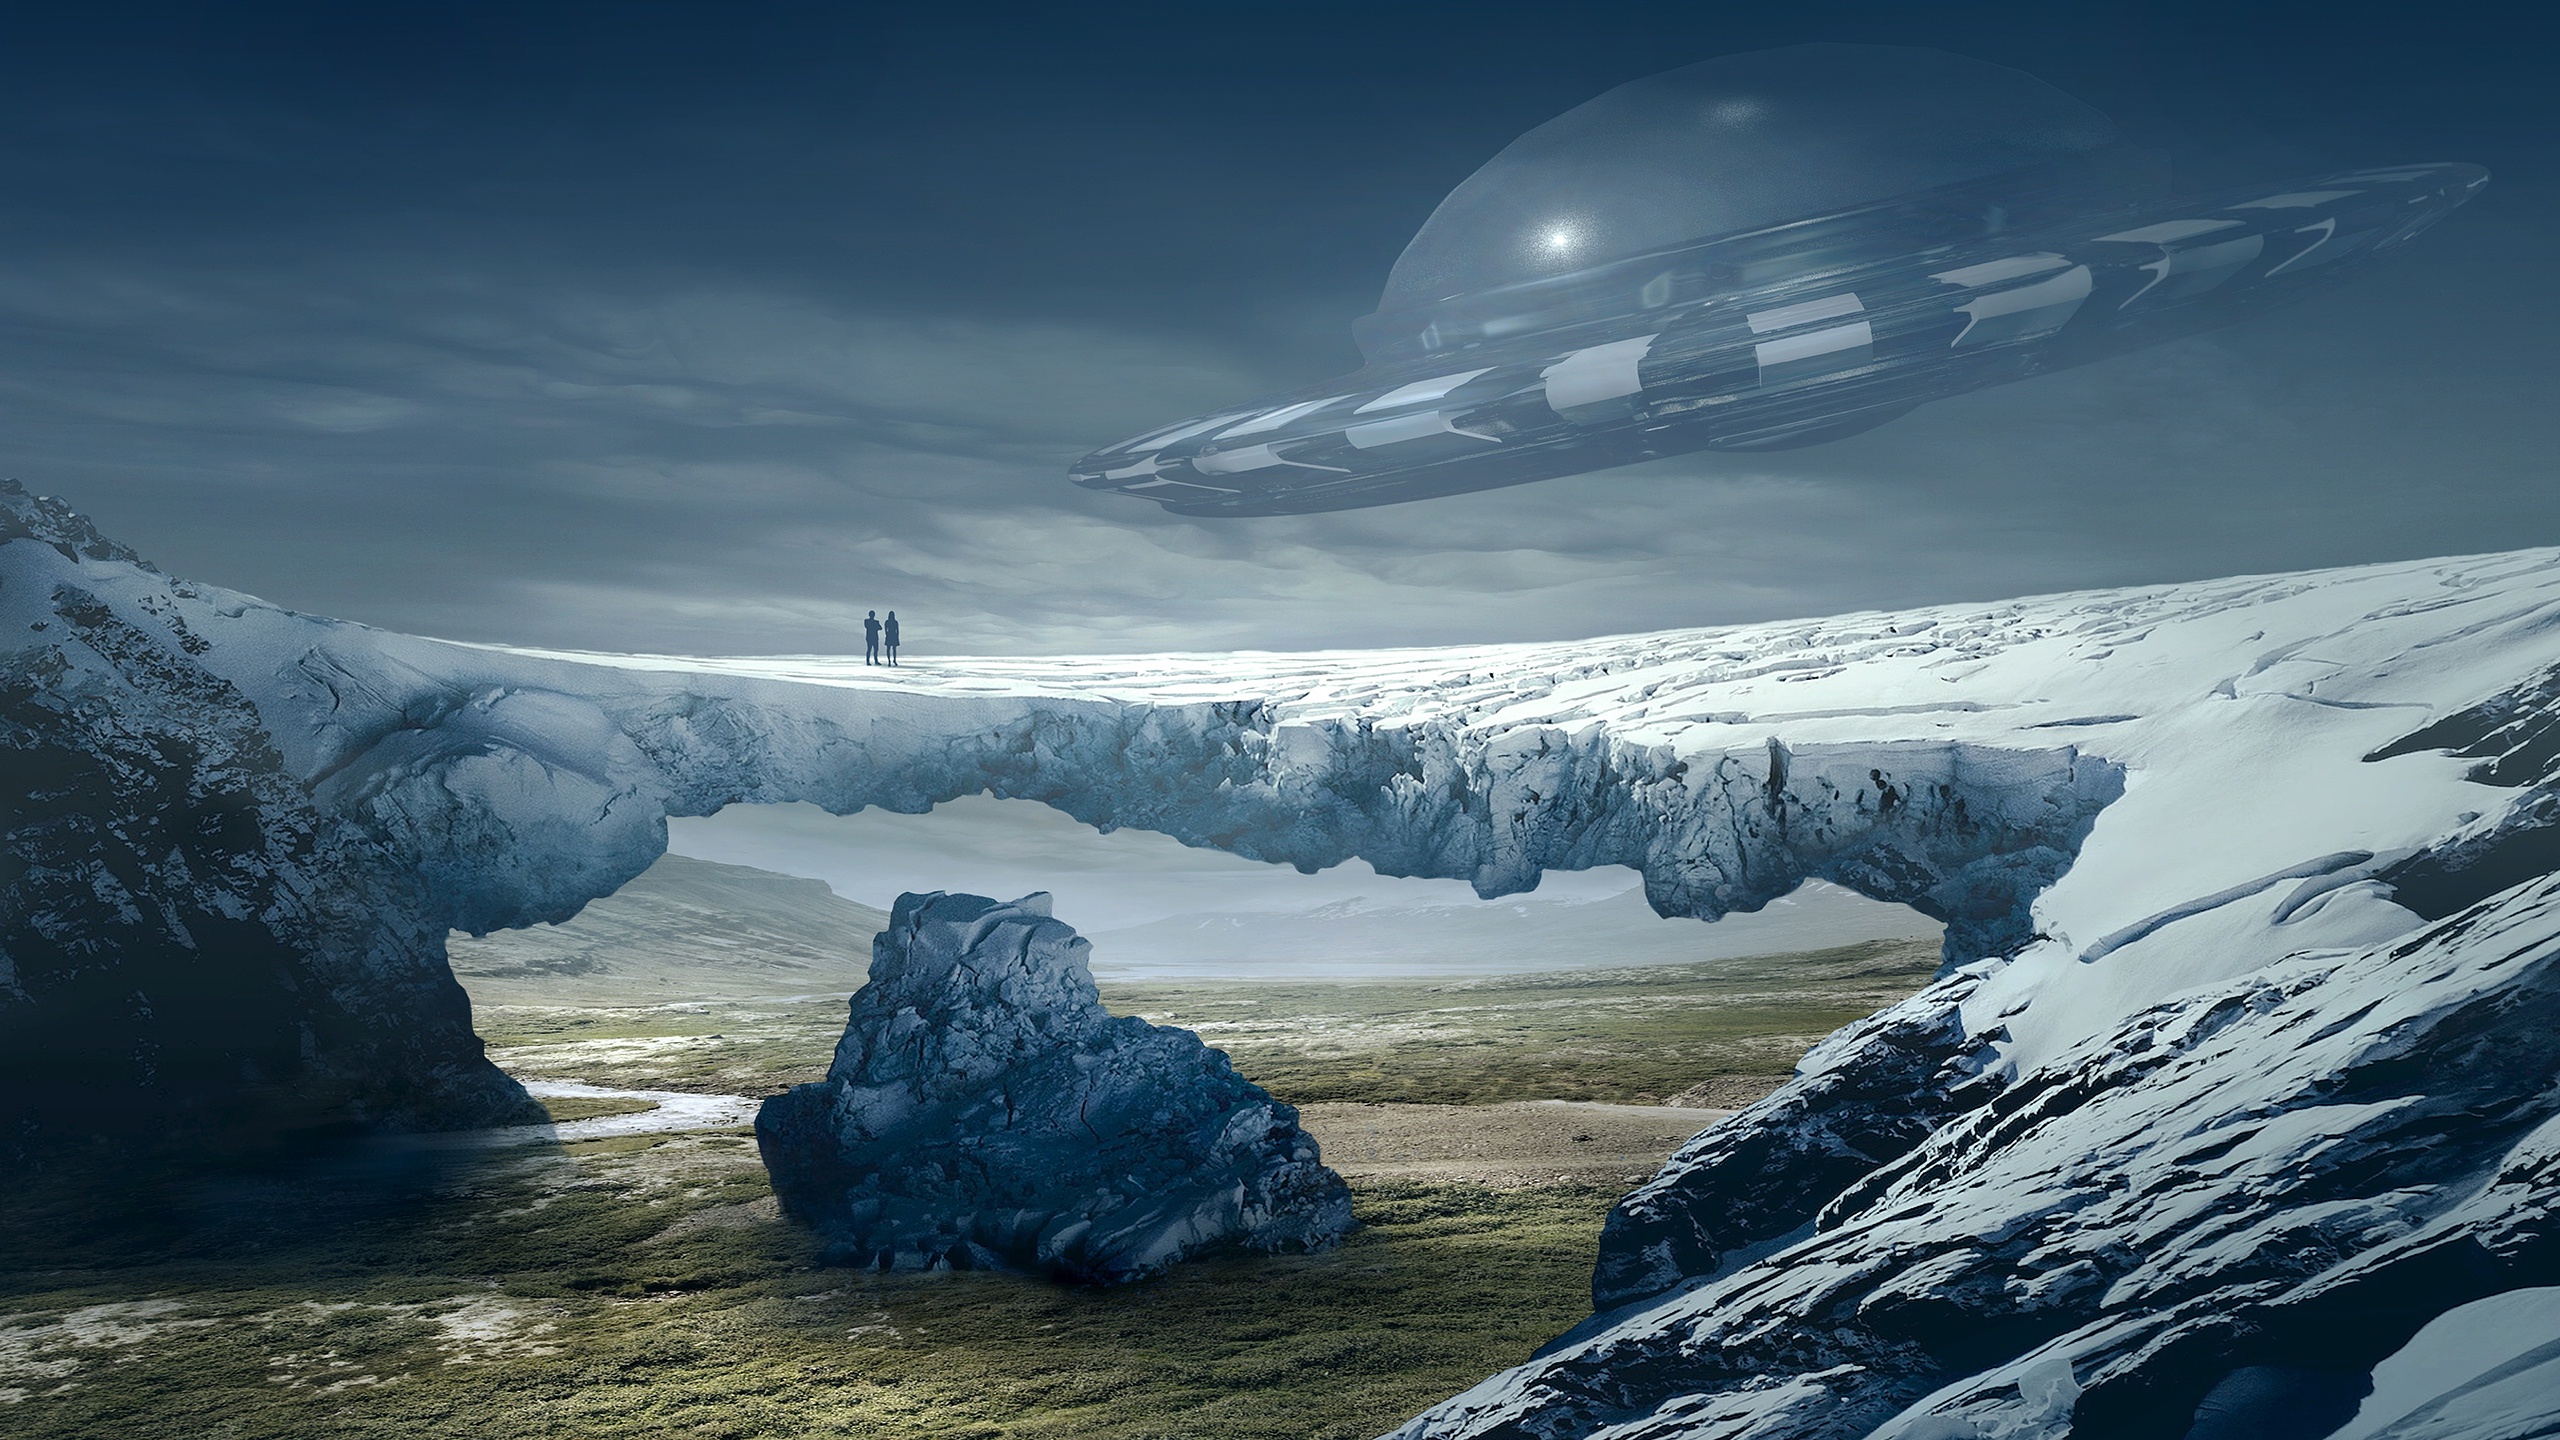 sci fi, spaceship, landscape, ufo